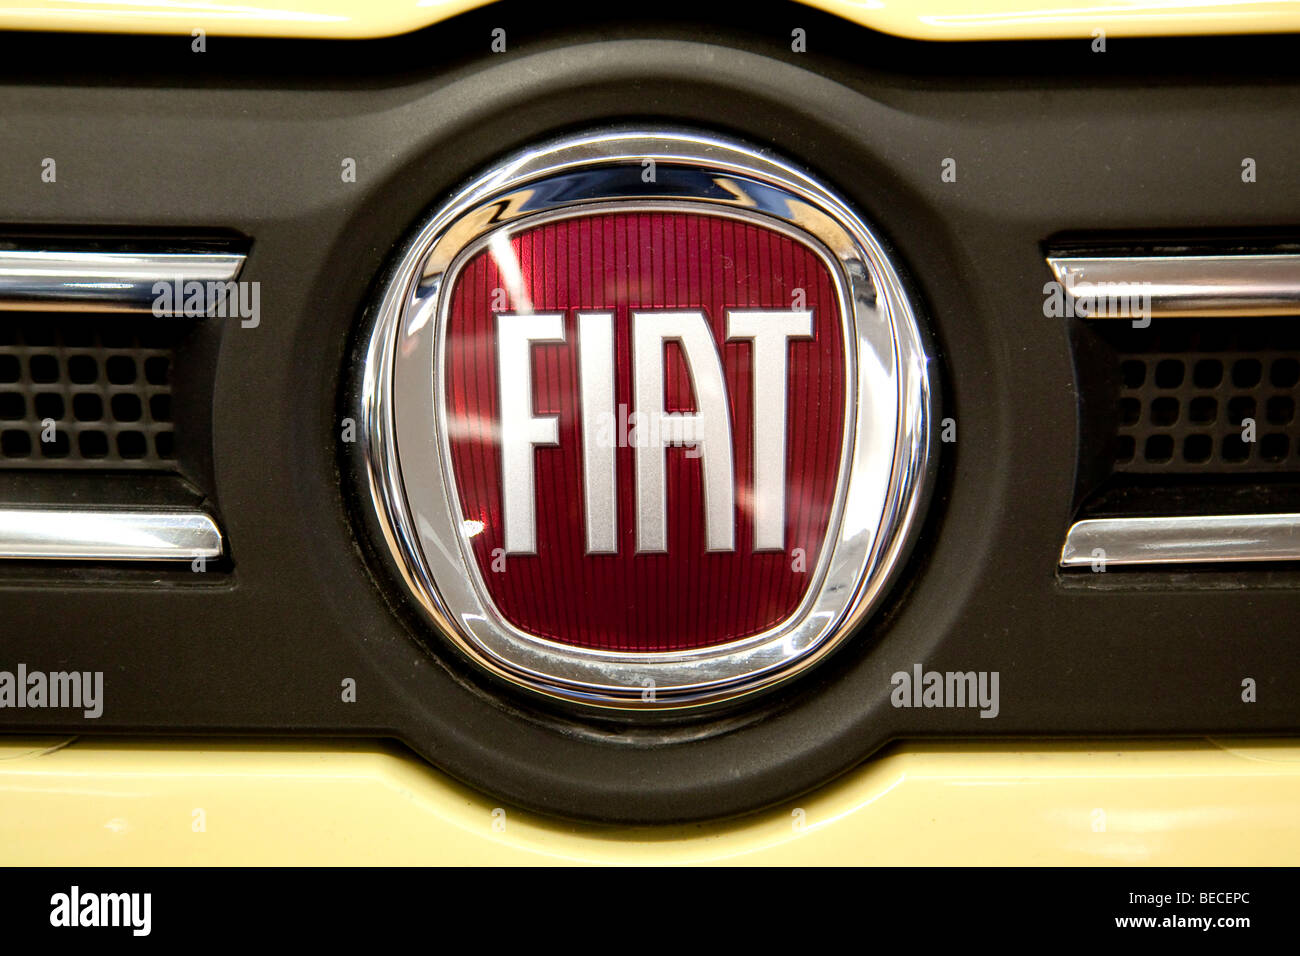 Fiat emblème sur une voiture Banque D'Images